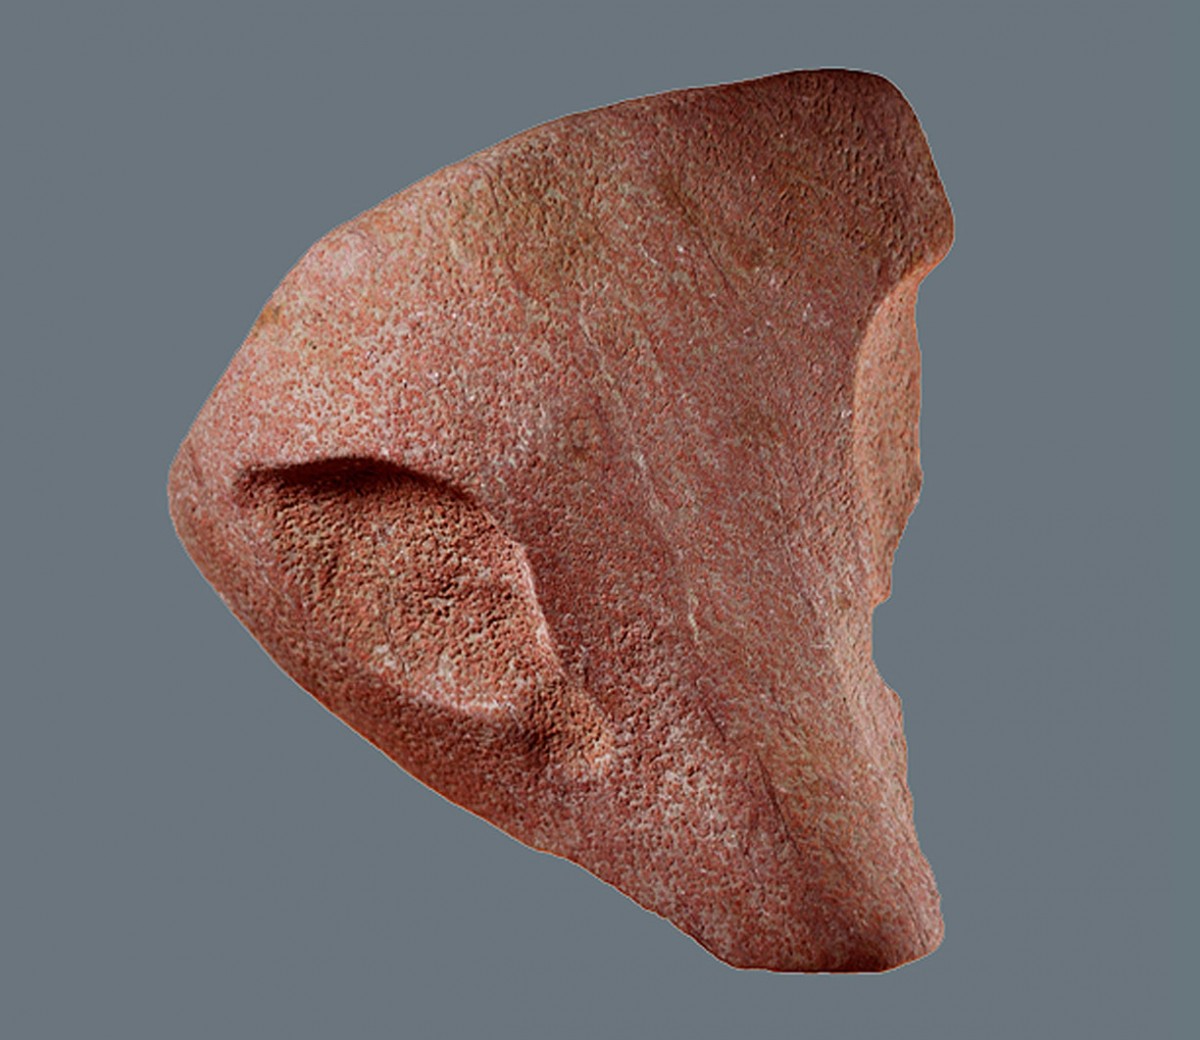 Fig. 9. Stone head of a feline. 